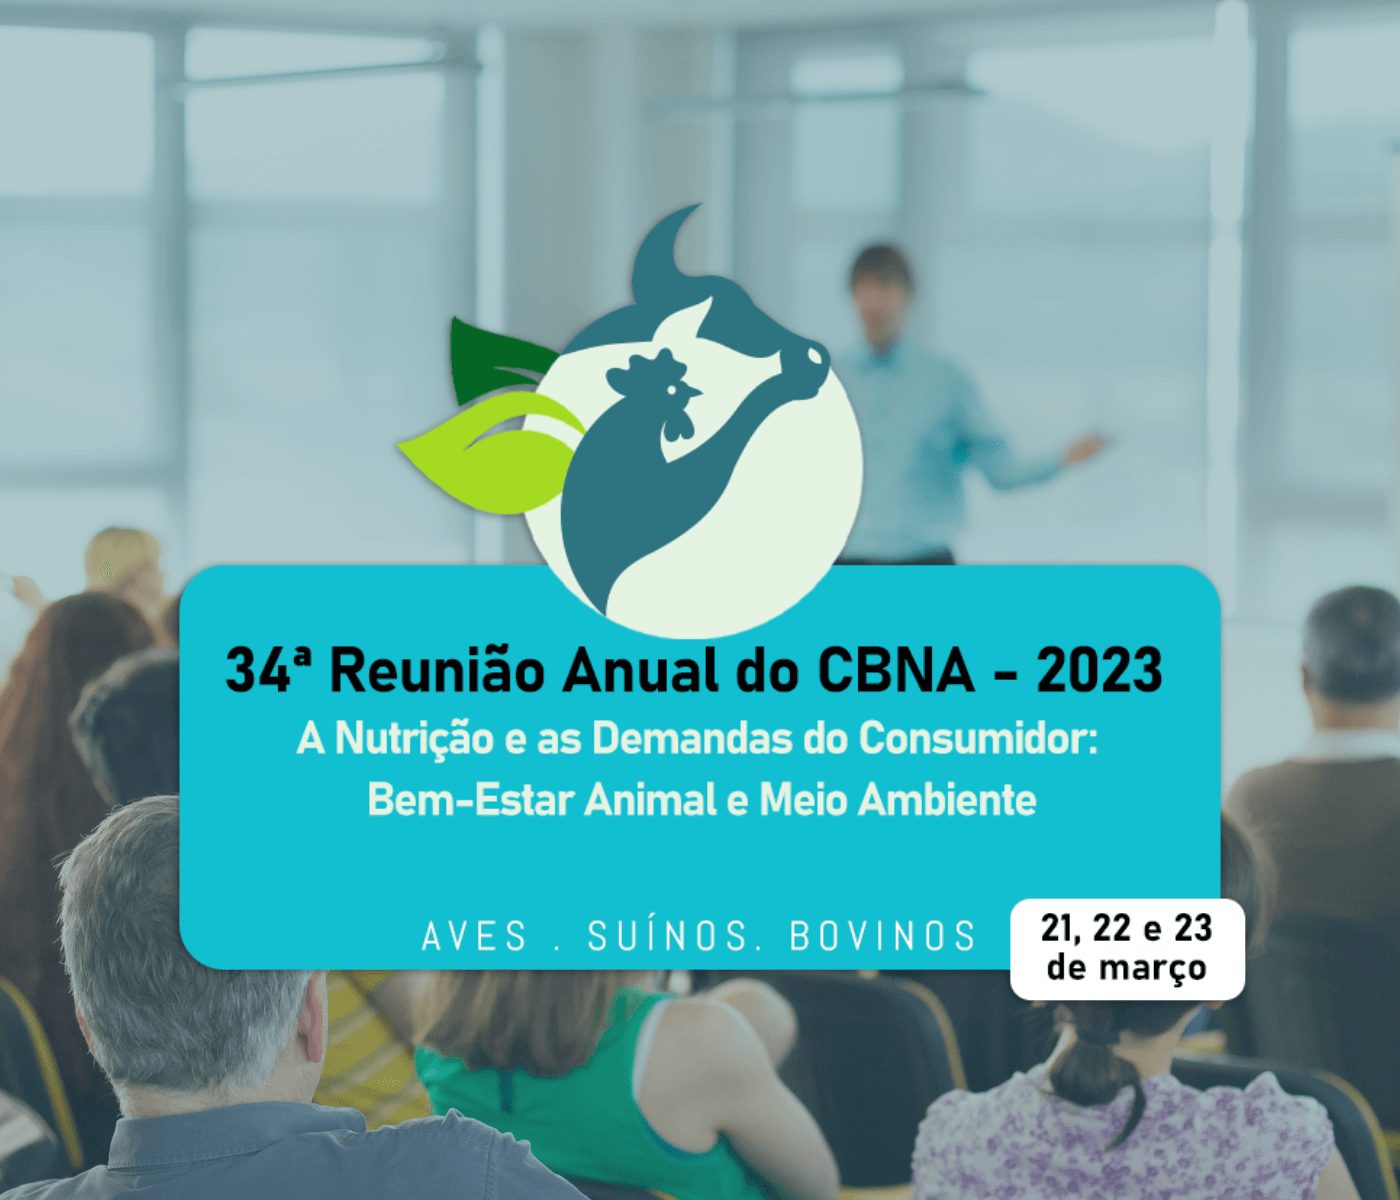 34ª Reunião do CBNA – Aves, Suínos e Bovinos acontece na semana que vem!